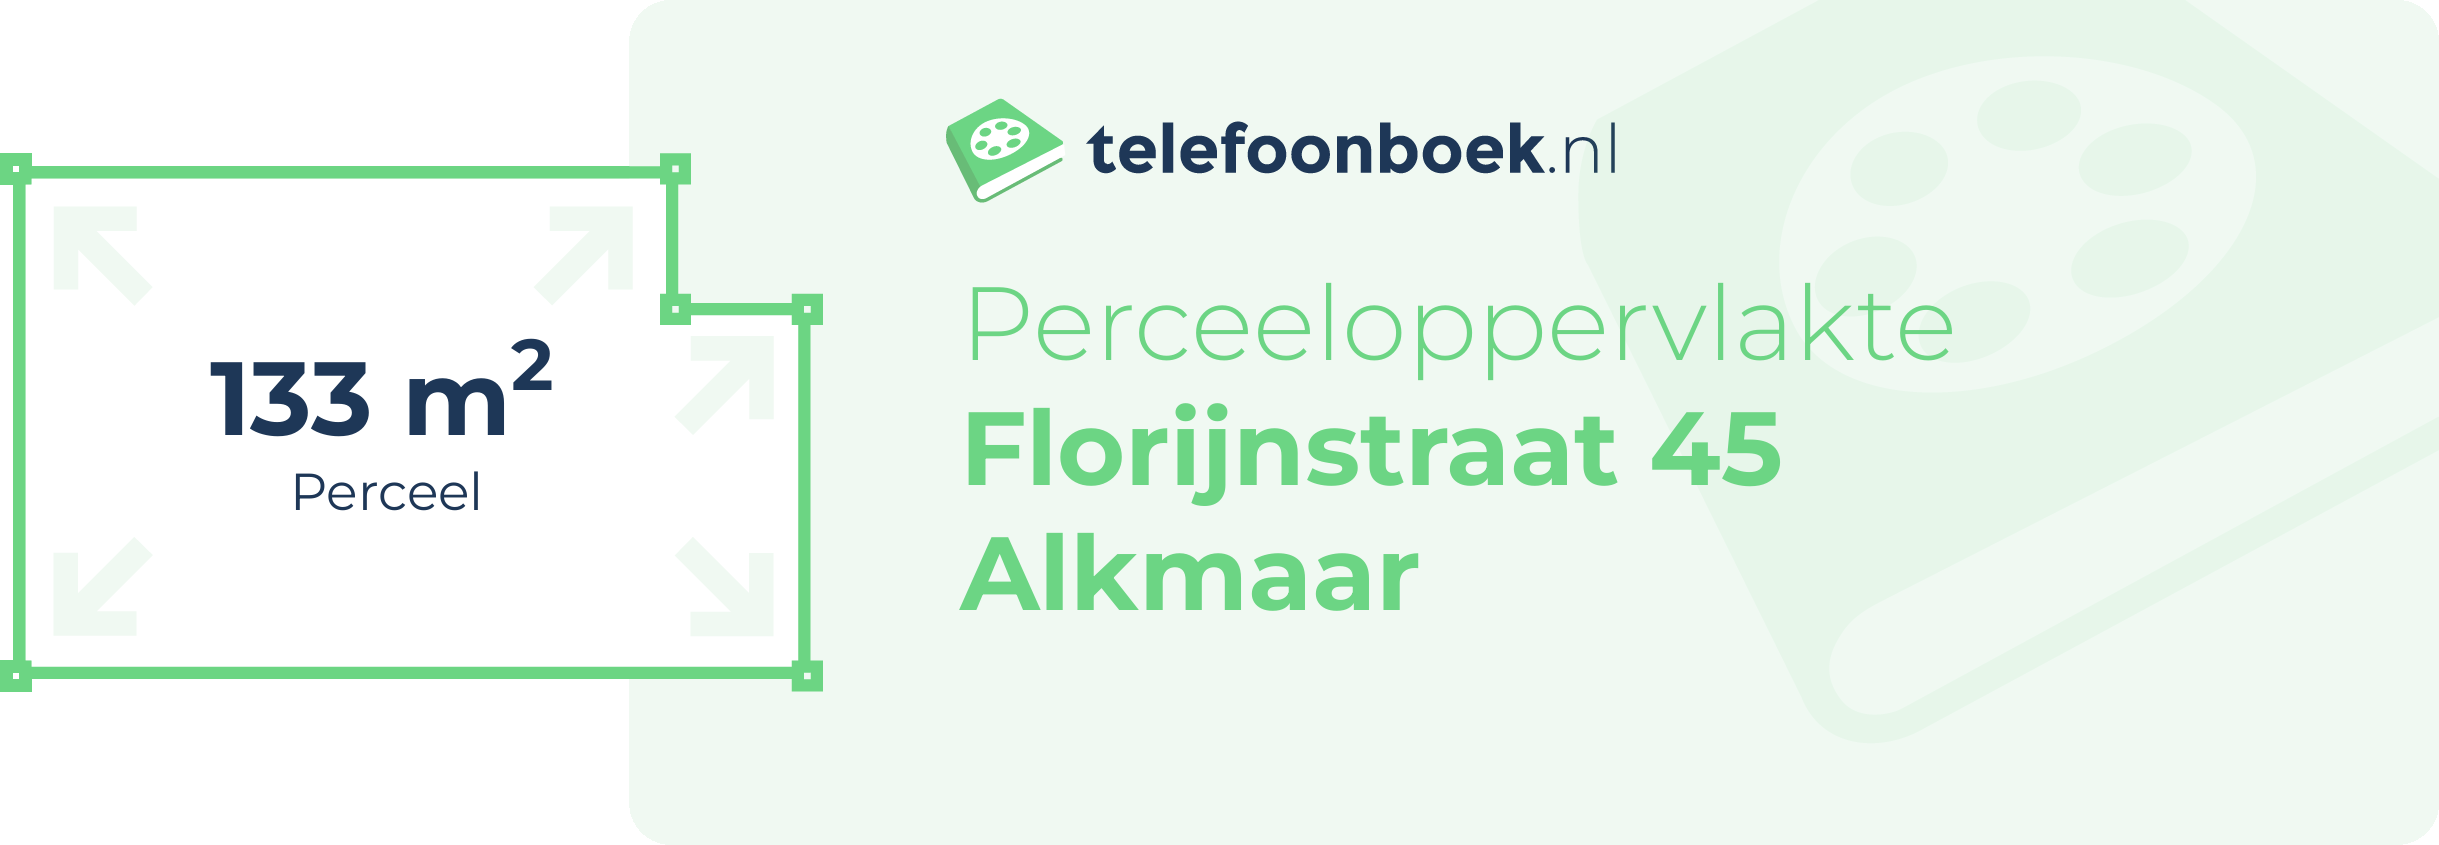 Perceeloppervlakte Florijnstraat 45 Alkmaar